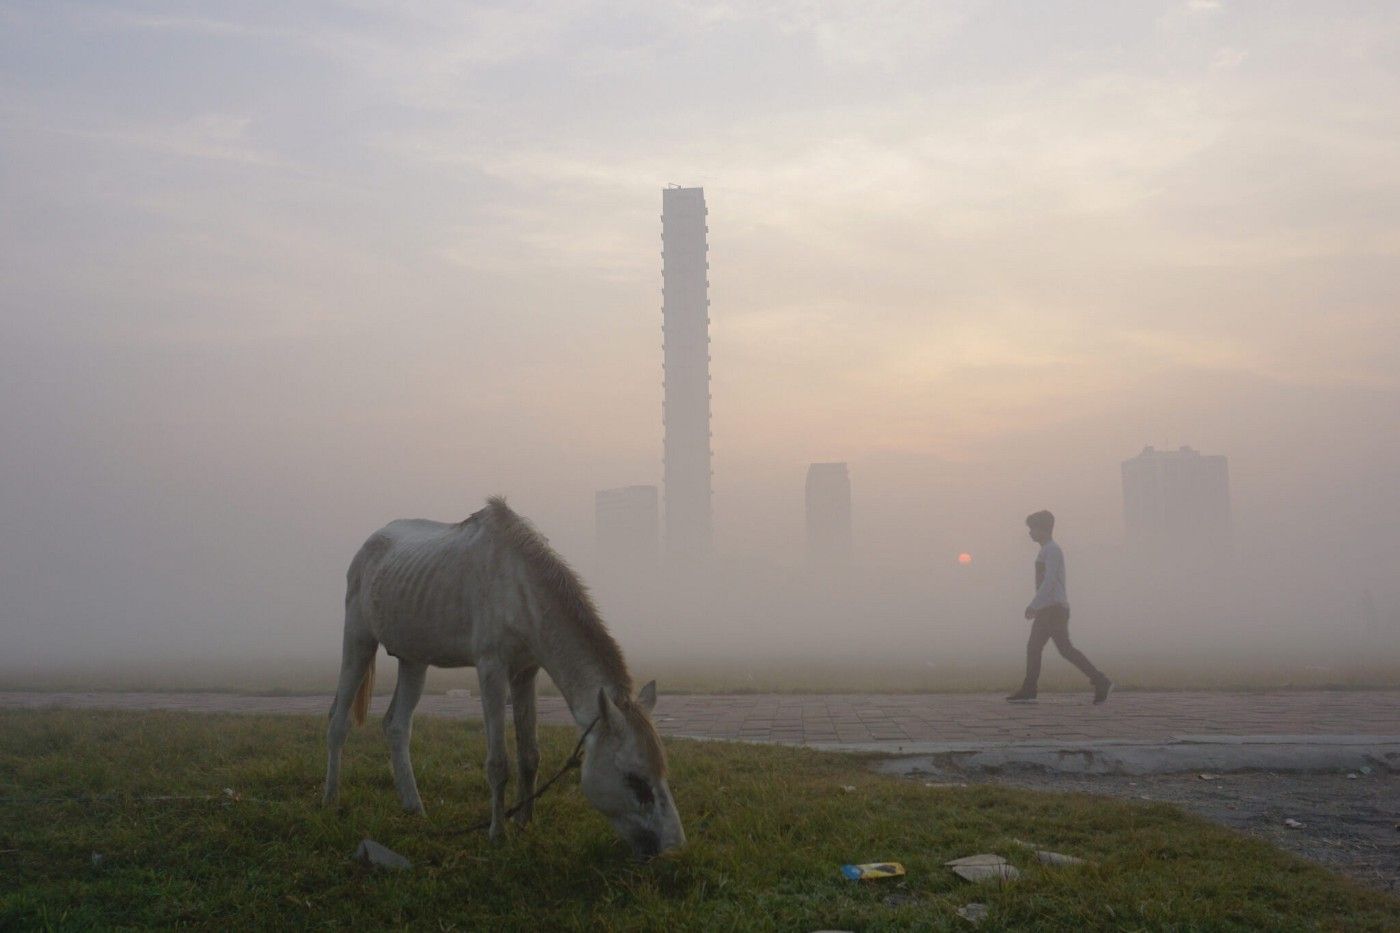 La nebbia mistica di Calcutta nelle immagini di Dipanjan Chakraborty